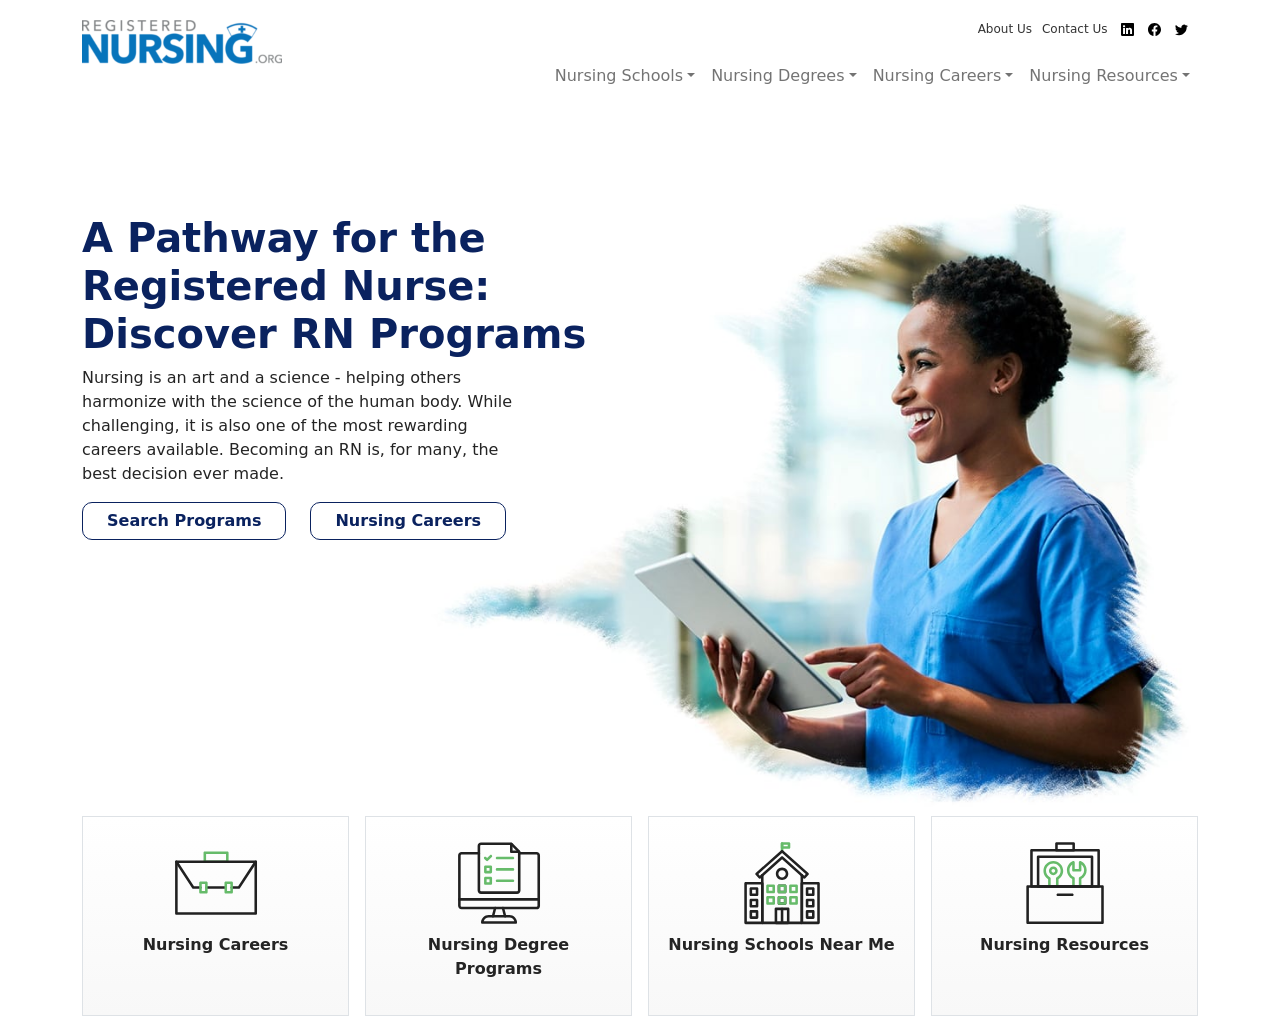 registerednursing.org